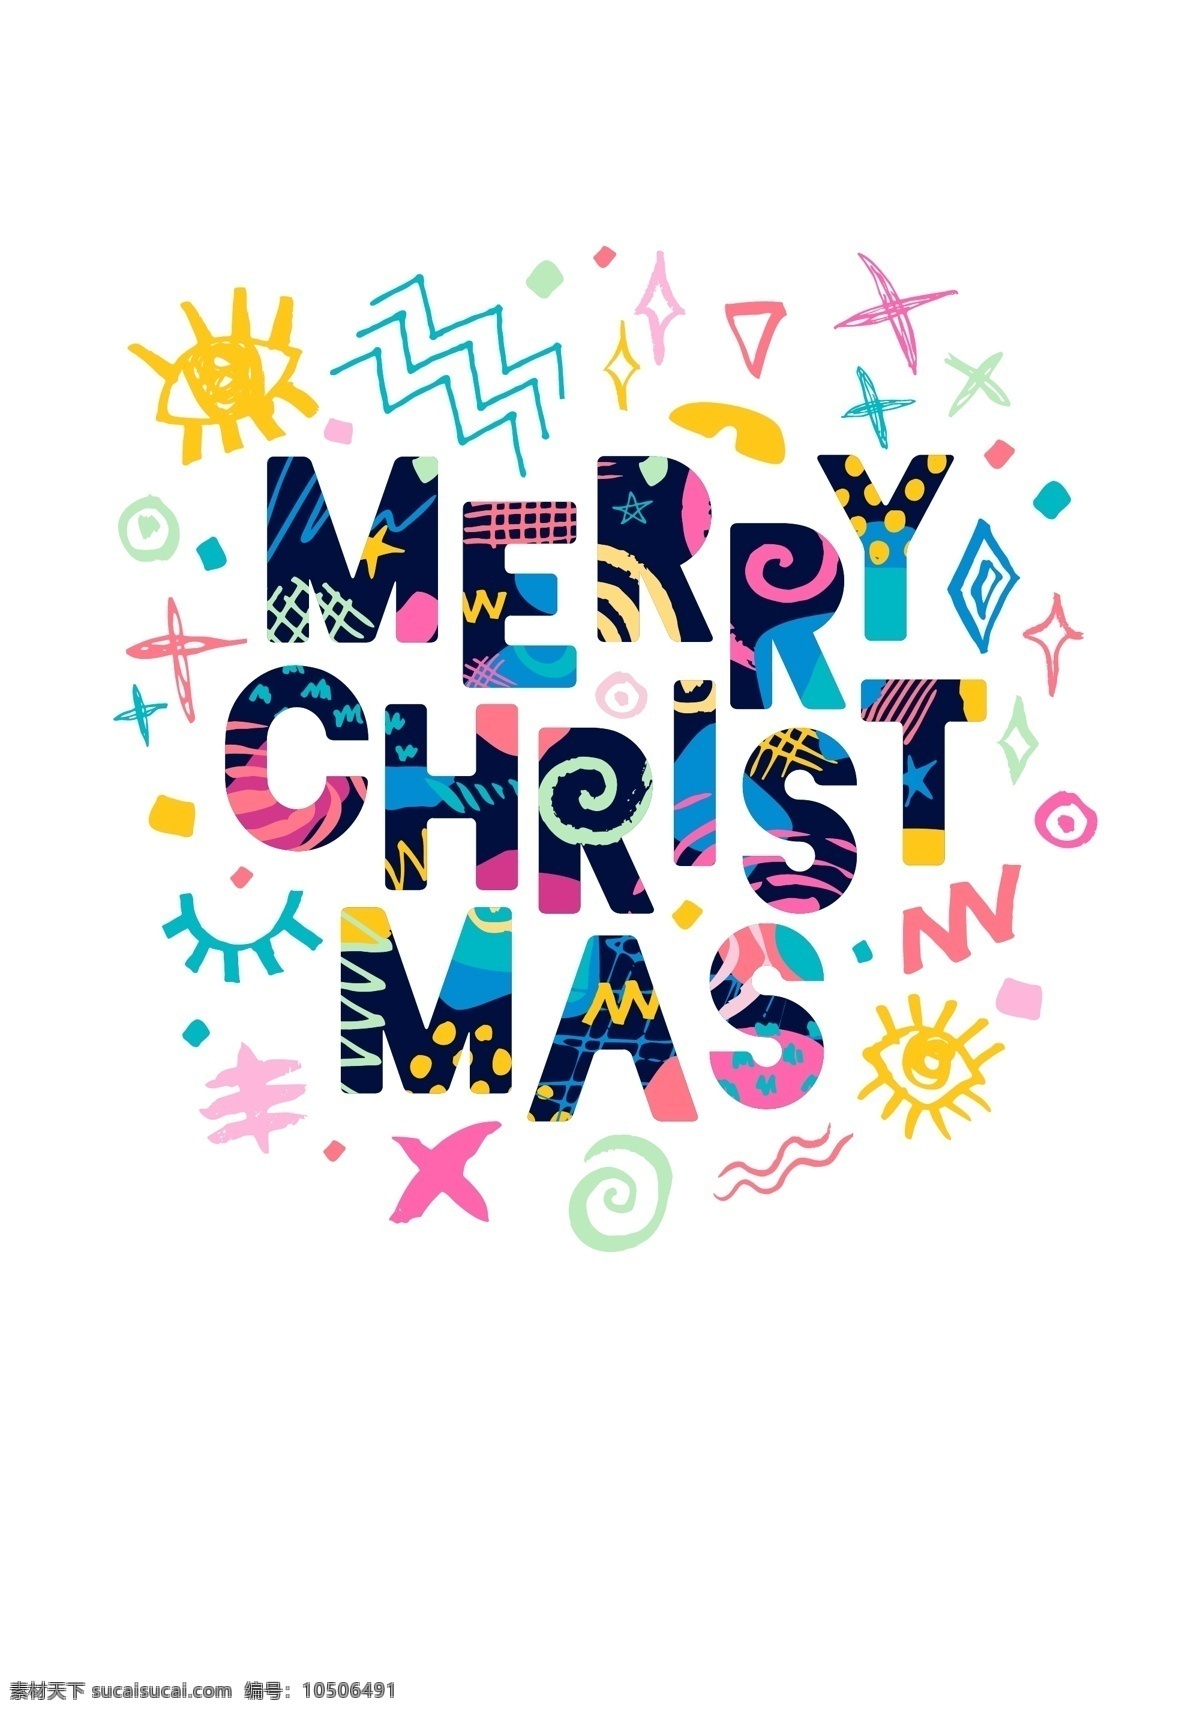 圣诞节 2018 年 创意 文字 矢量 彩色 花纹 平面素材 设计素材 矢量素材 图案 艺术 英语 主题 字体